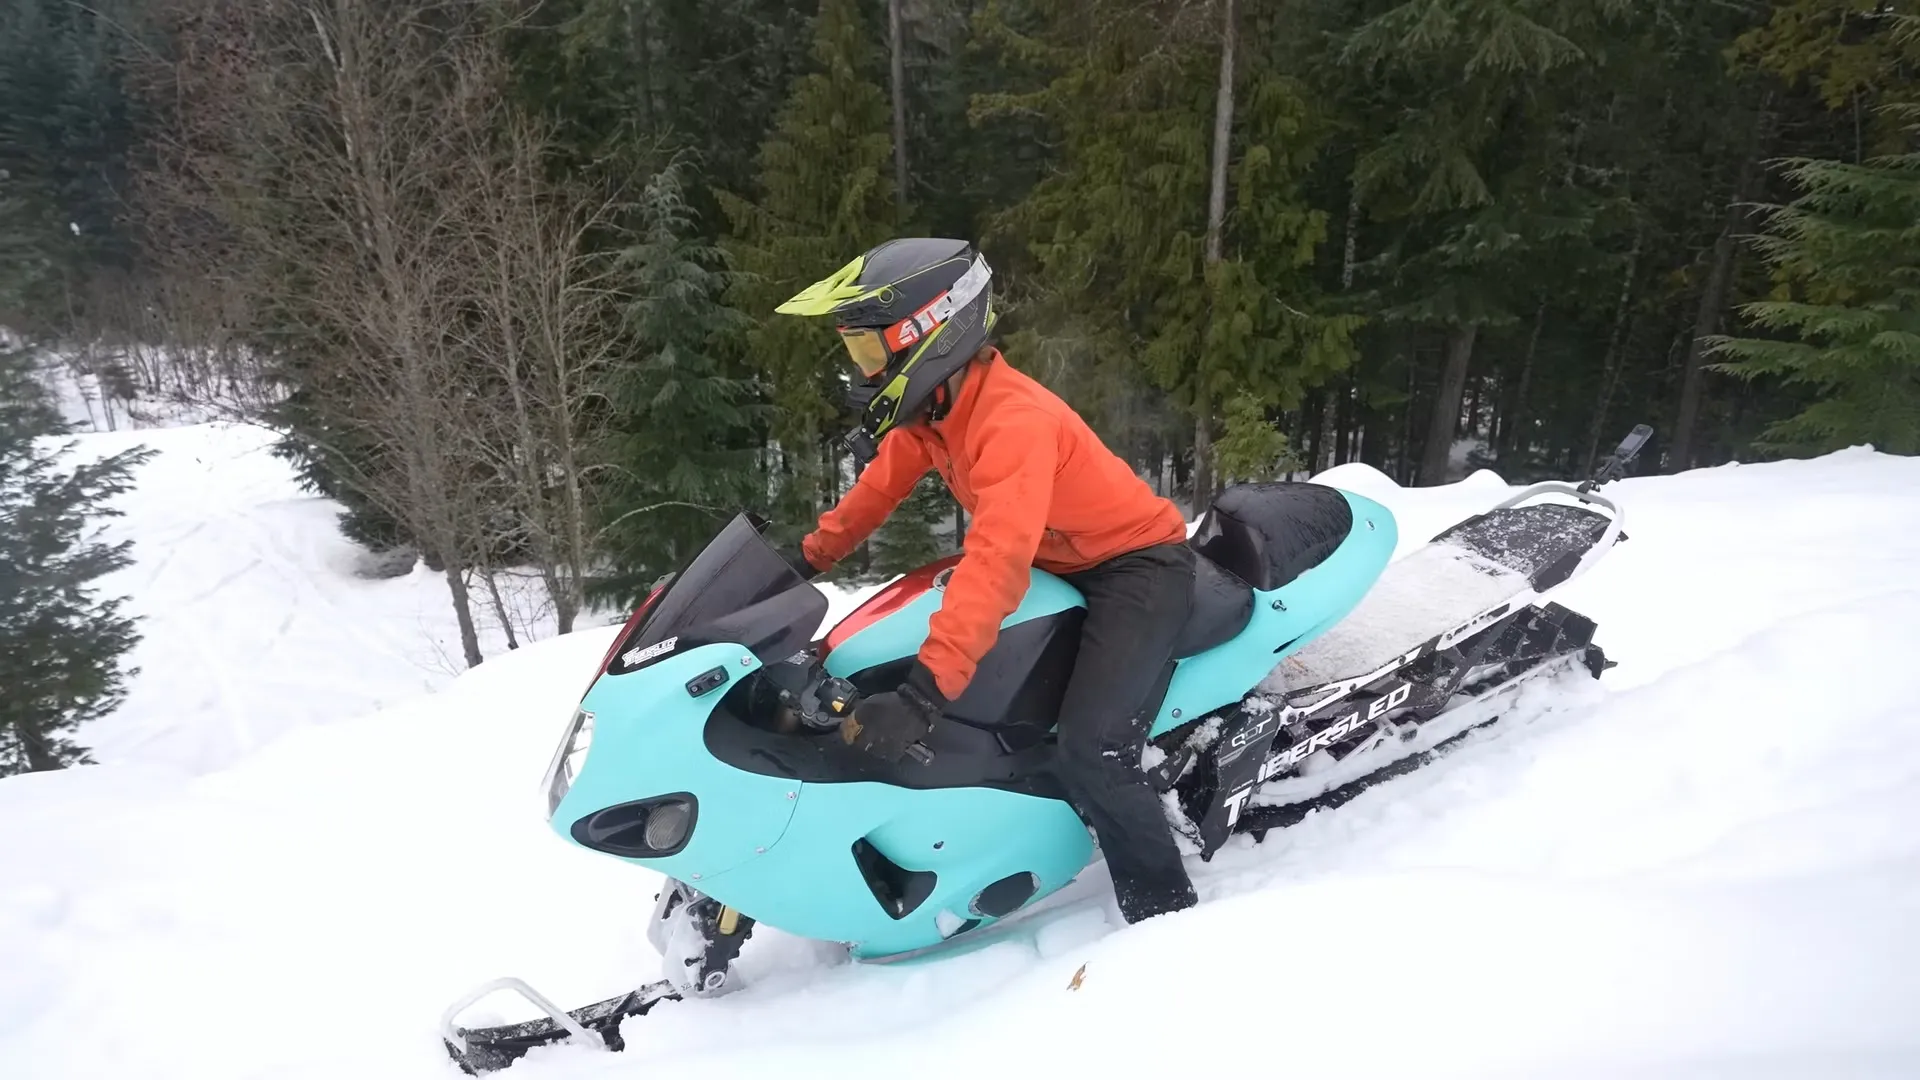 Alguien ha pensado que era buena idea convertir una Suzuki Hayabusa en una moto de nieve